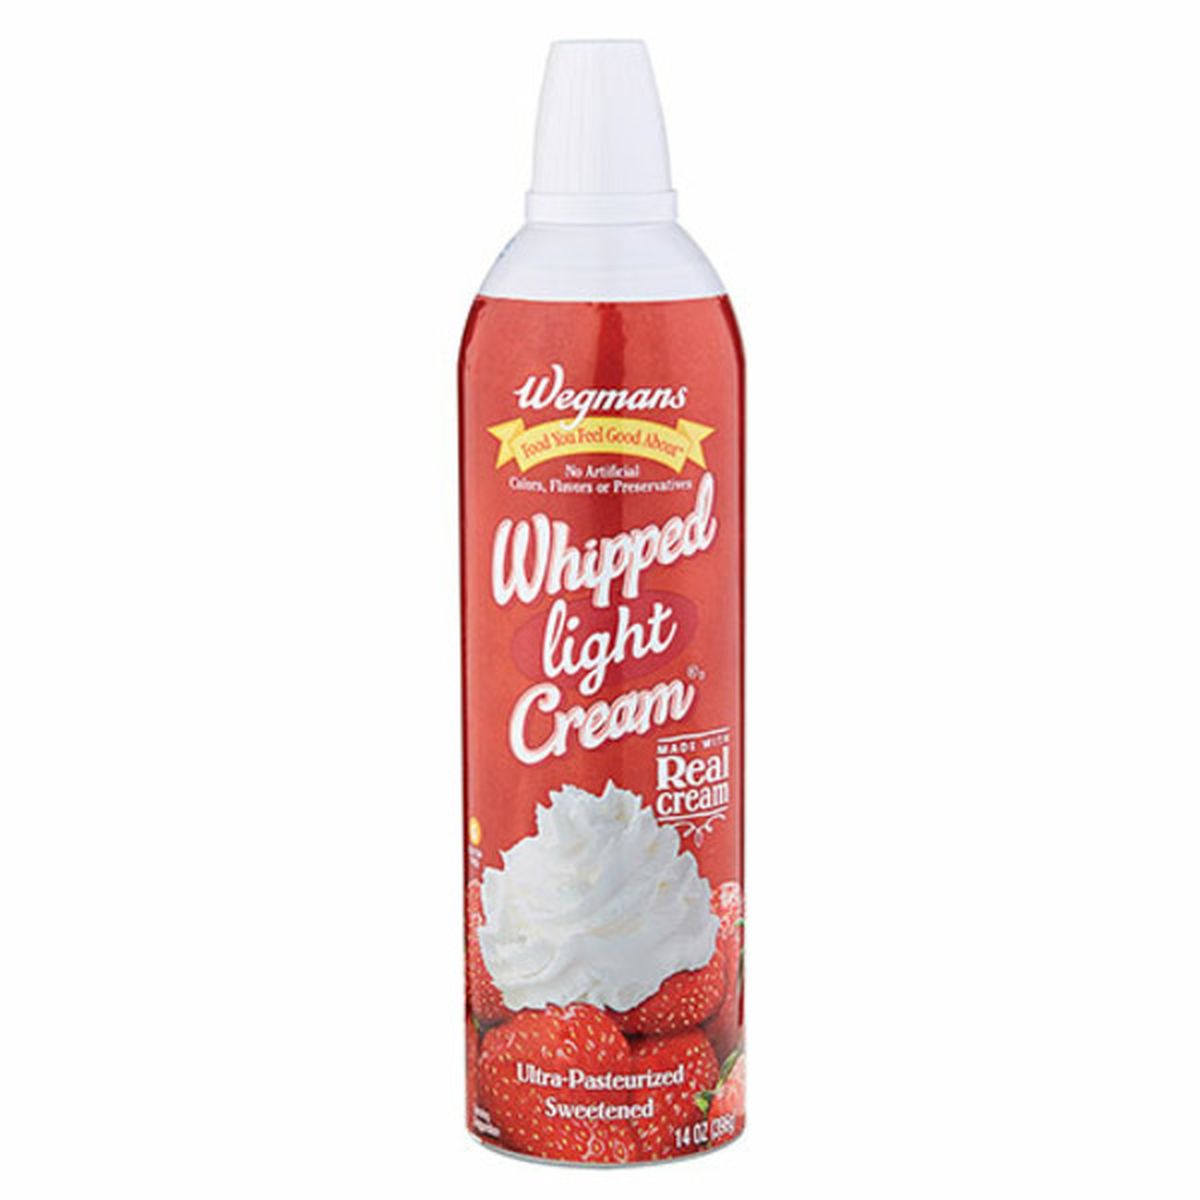 Calories in Wegmans Light Whipped Cream